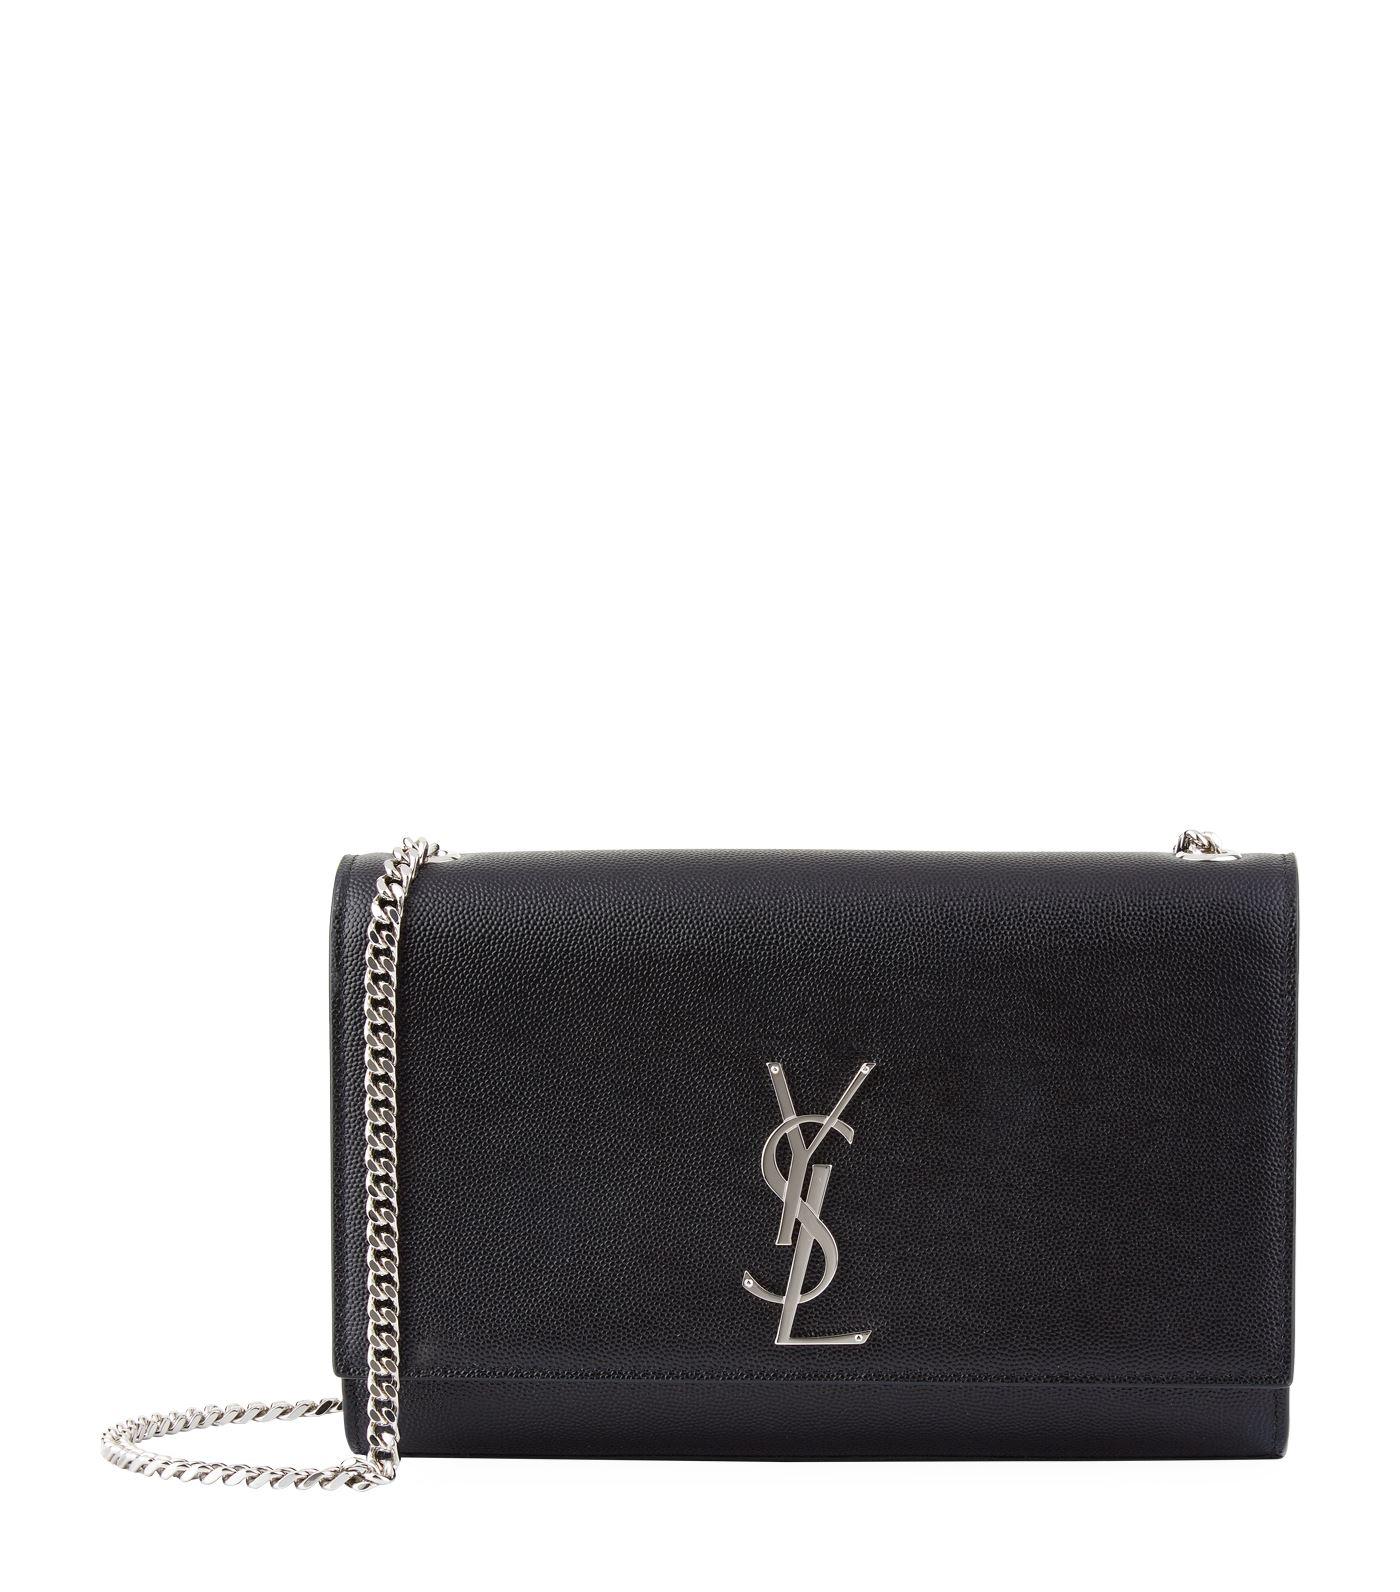 Saint Laurent Leather Medium Kate Monogram Shoulder Bag in Black - Save ...